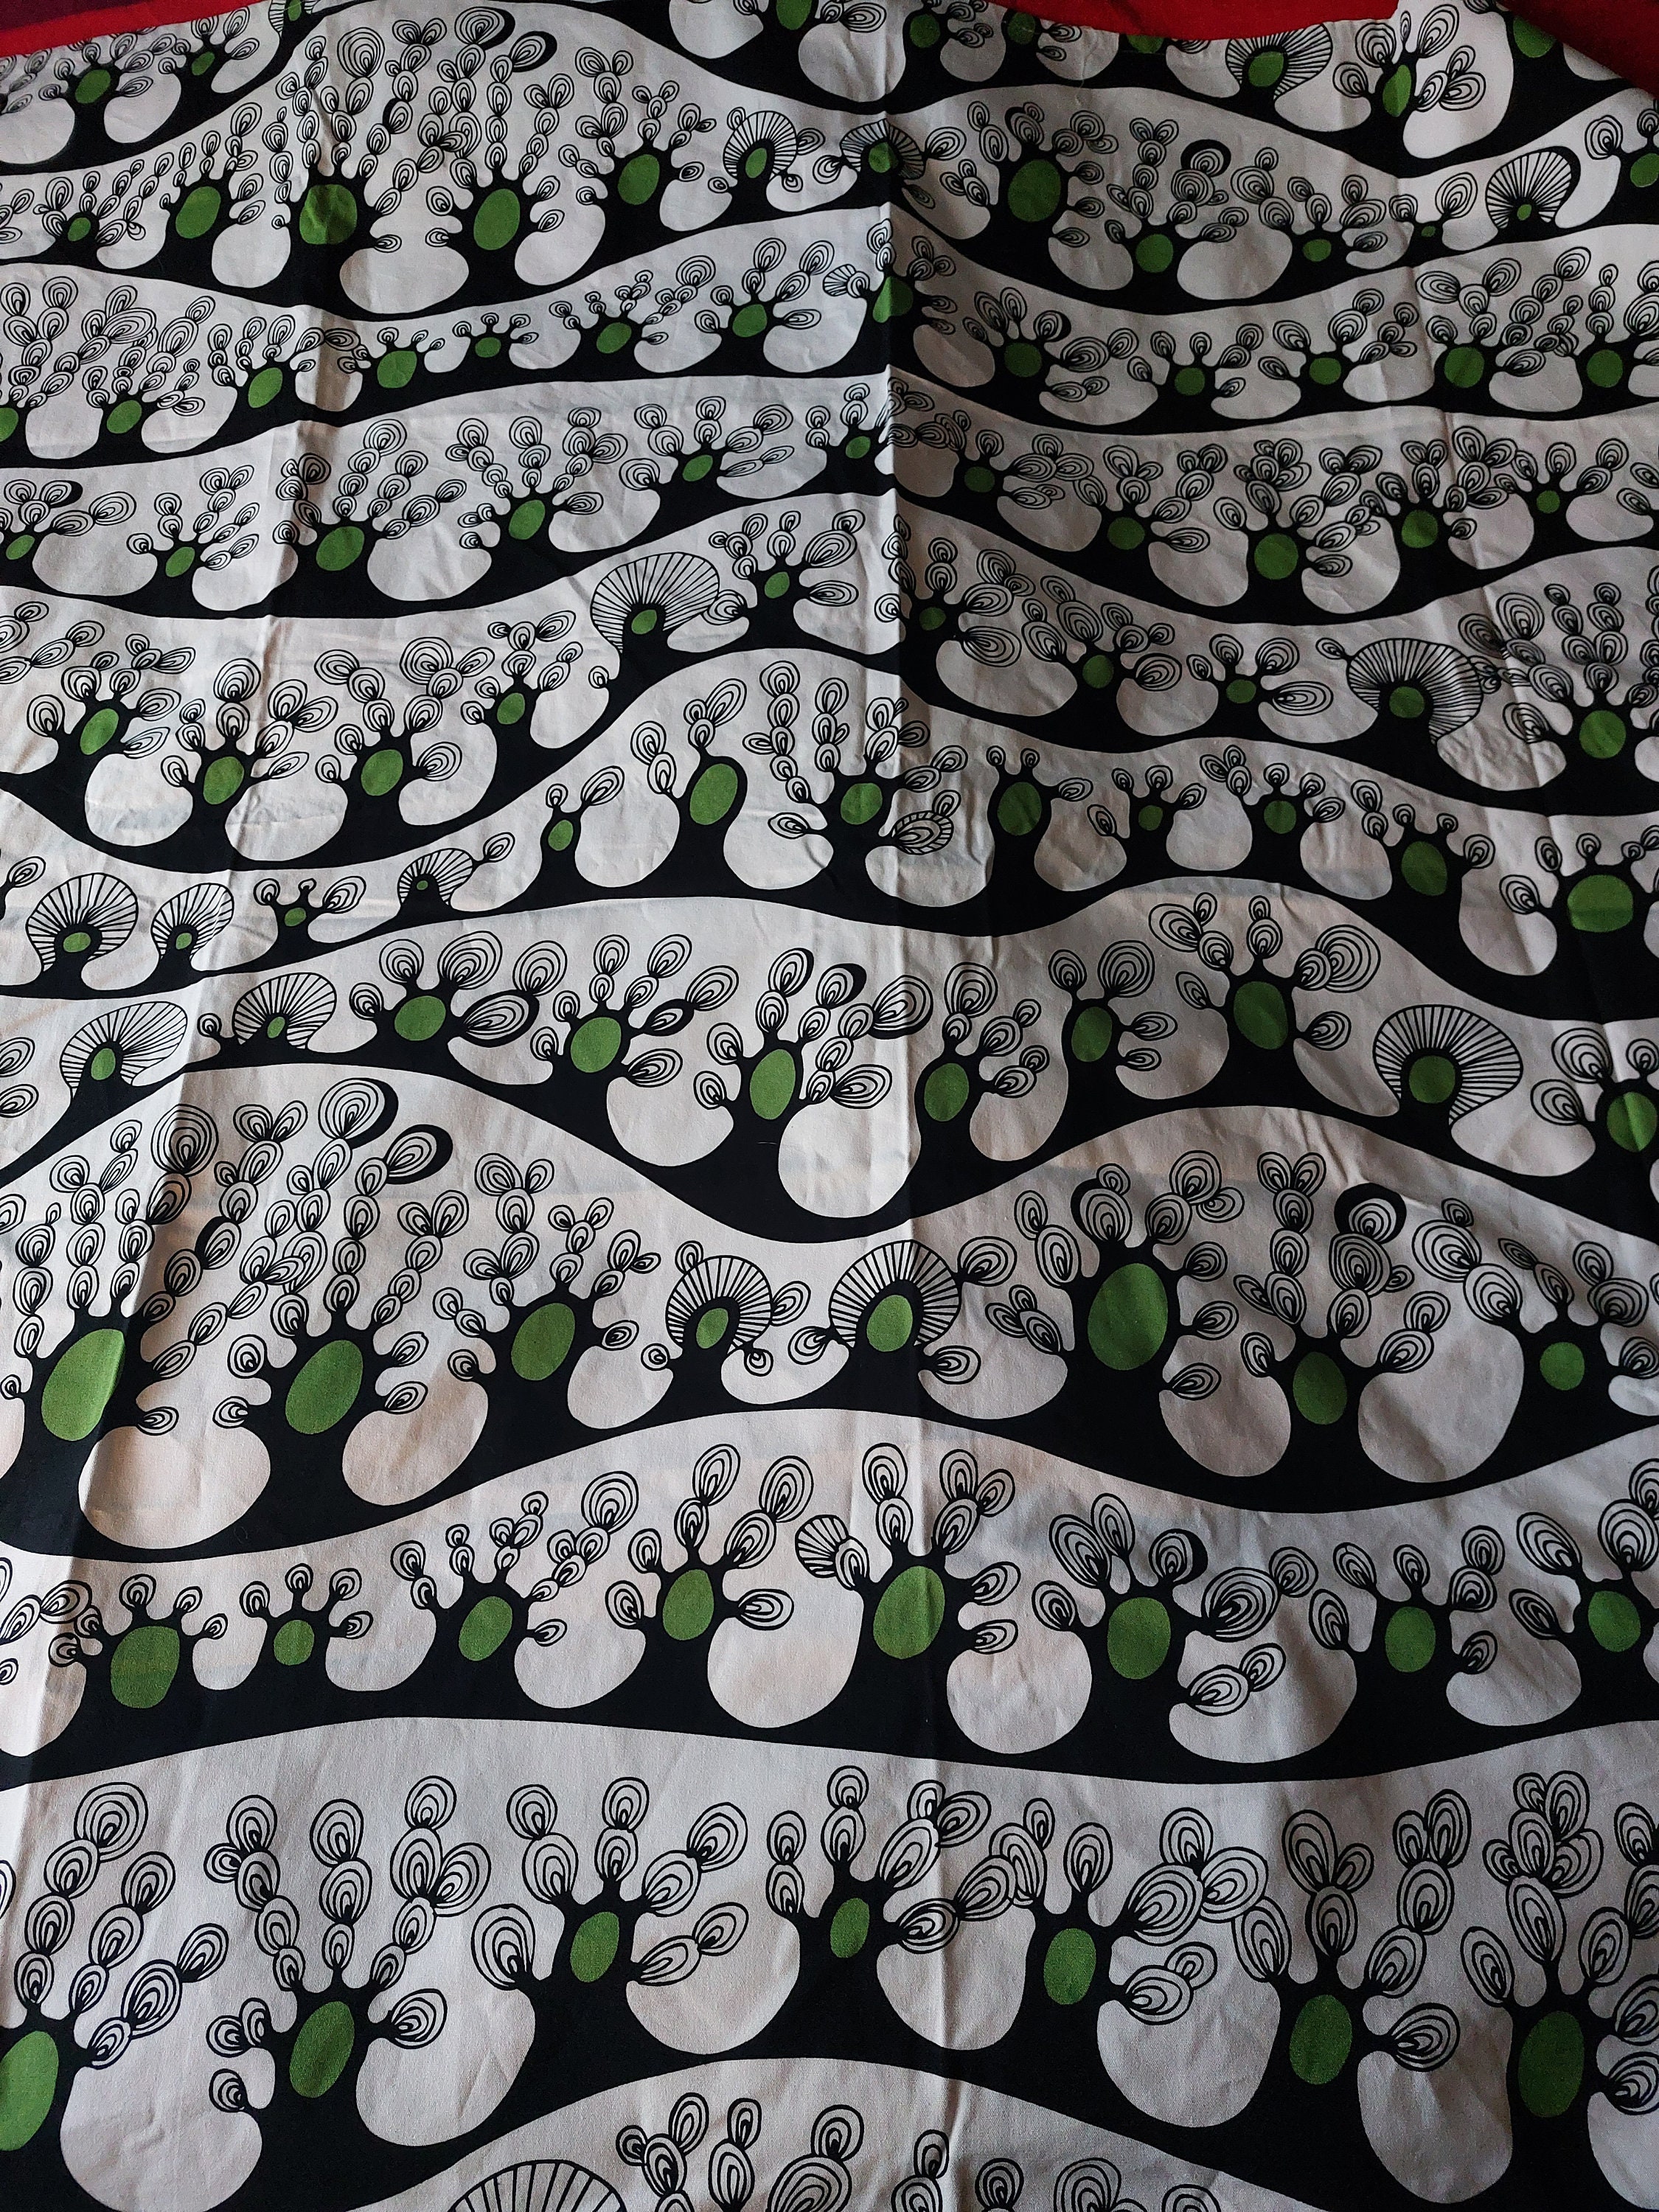 Nedrustning Klimatiske bjerge Creek Cotton Fabric. Designed by Cilla Ramnek 2008 IKEA of Sweden - Etsy